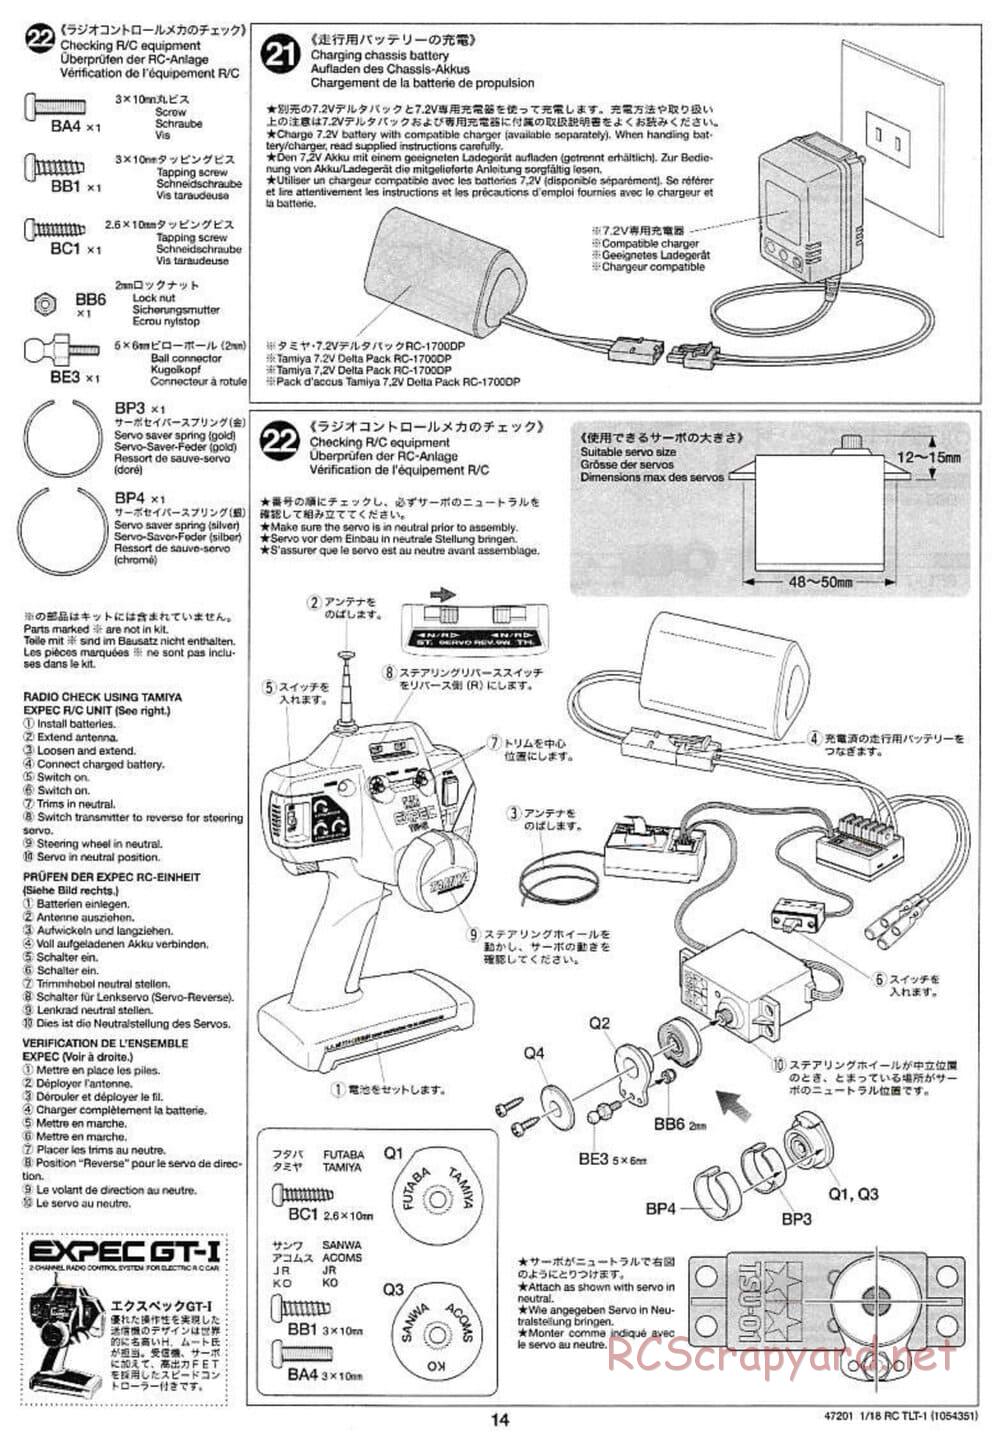 Tamiya - Rock Buster - TLT-1 Chassis - Manual - Page 14